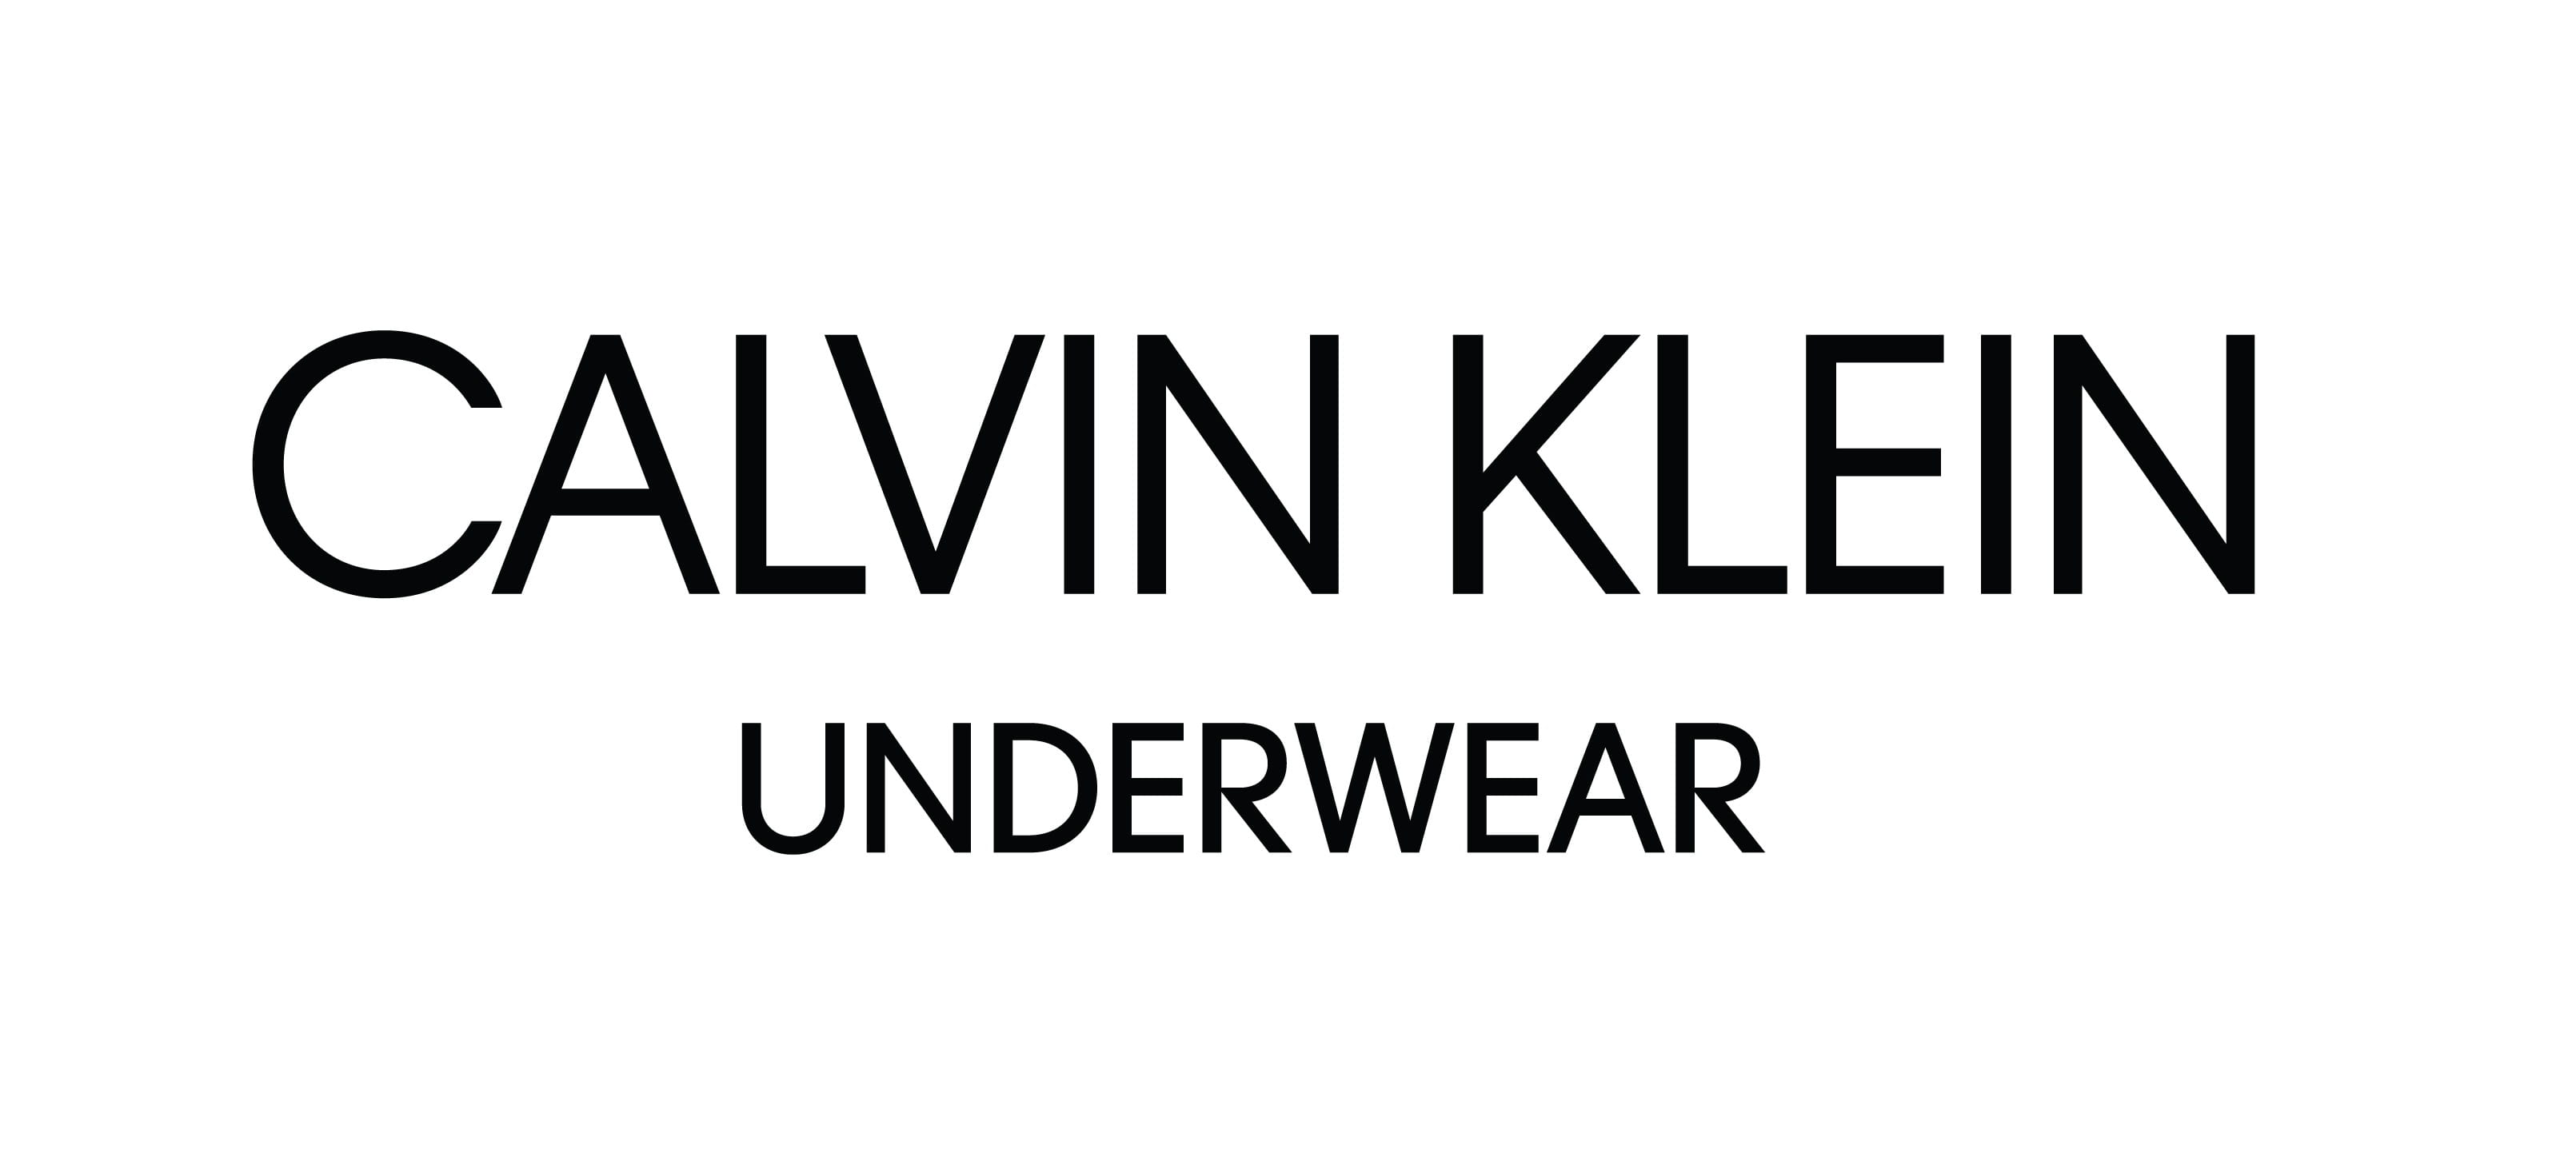 Image result for Calvin Klein Underwear logo"